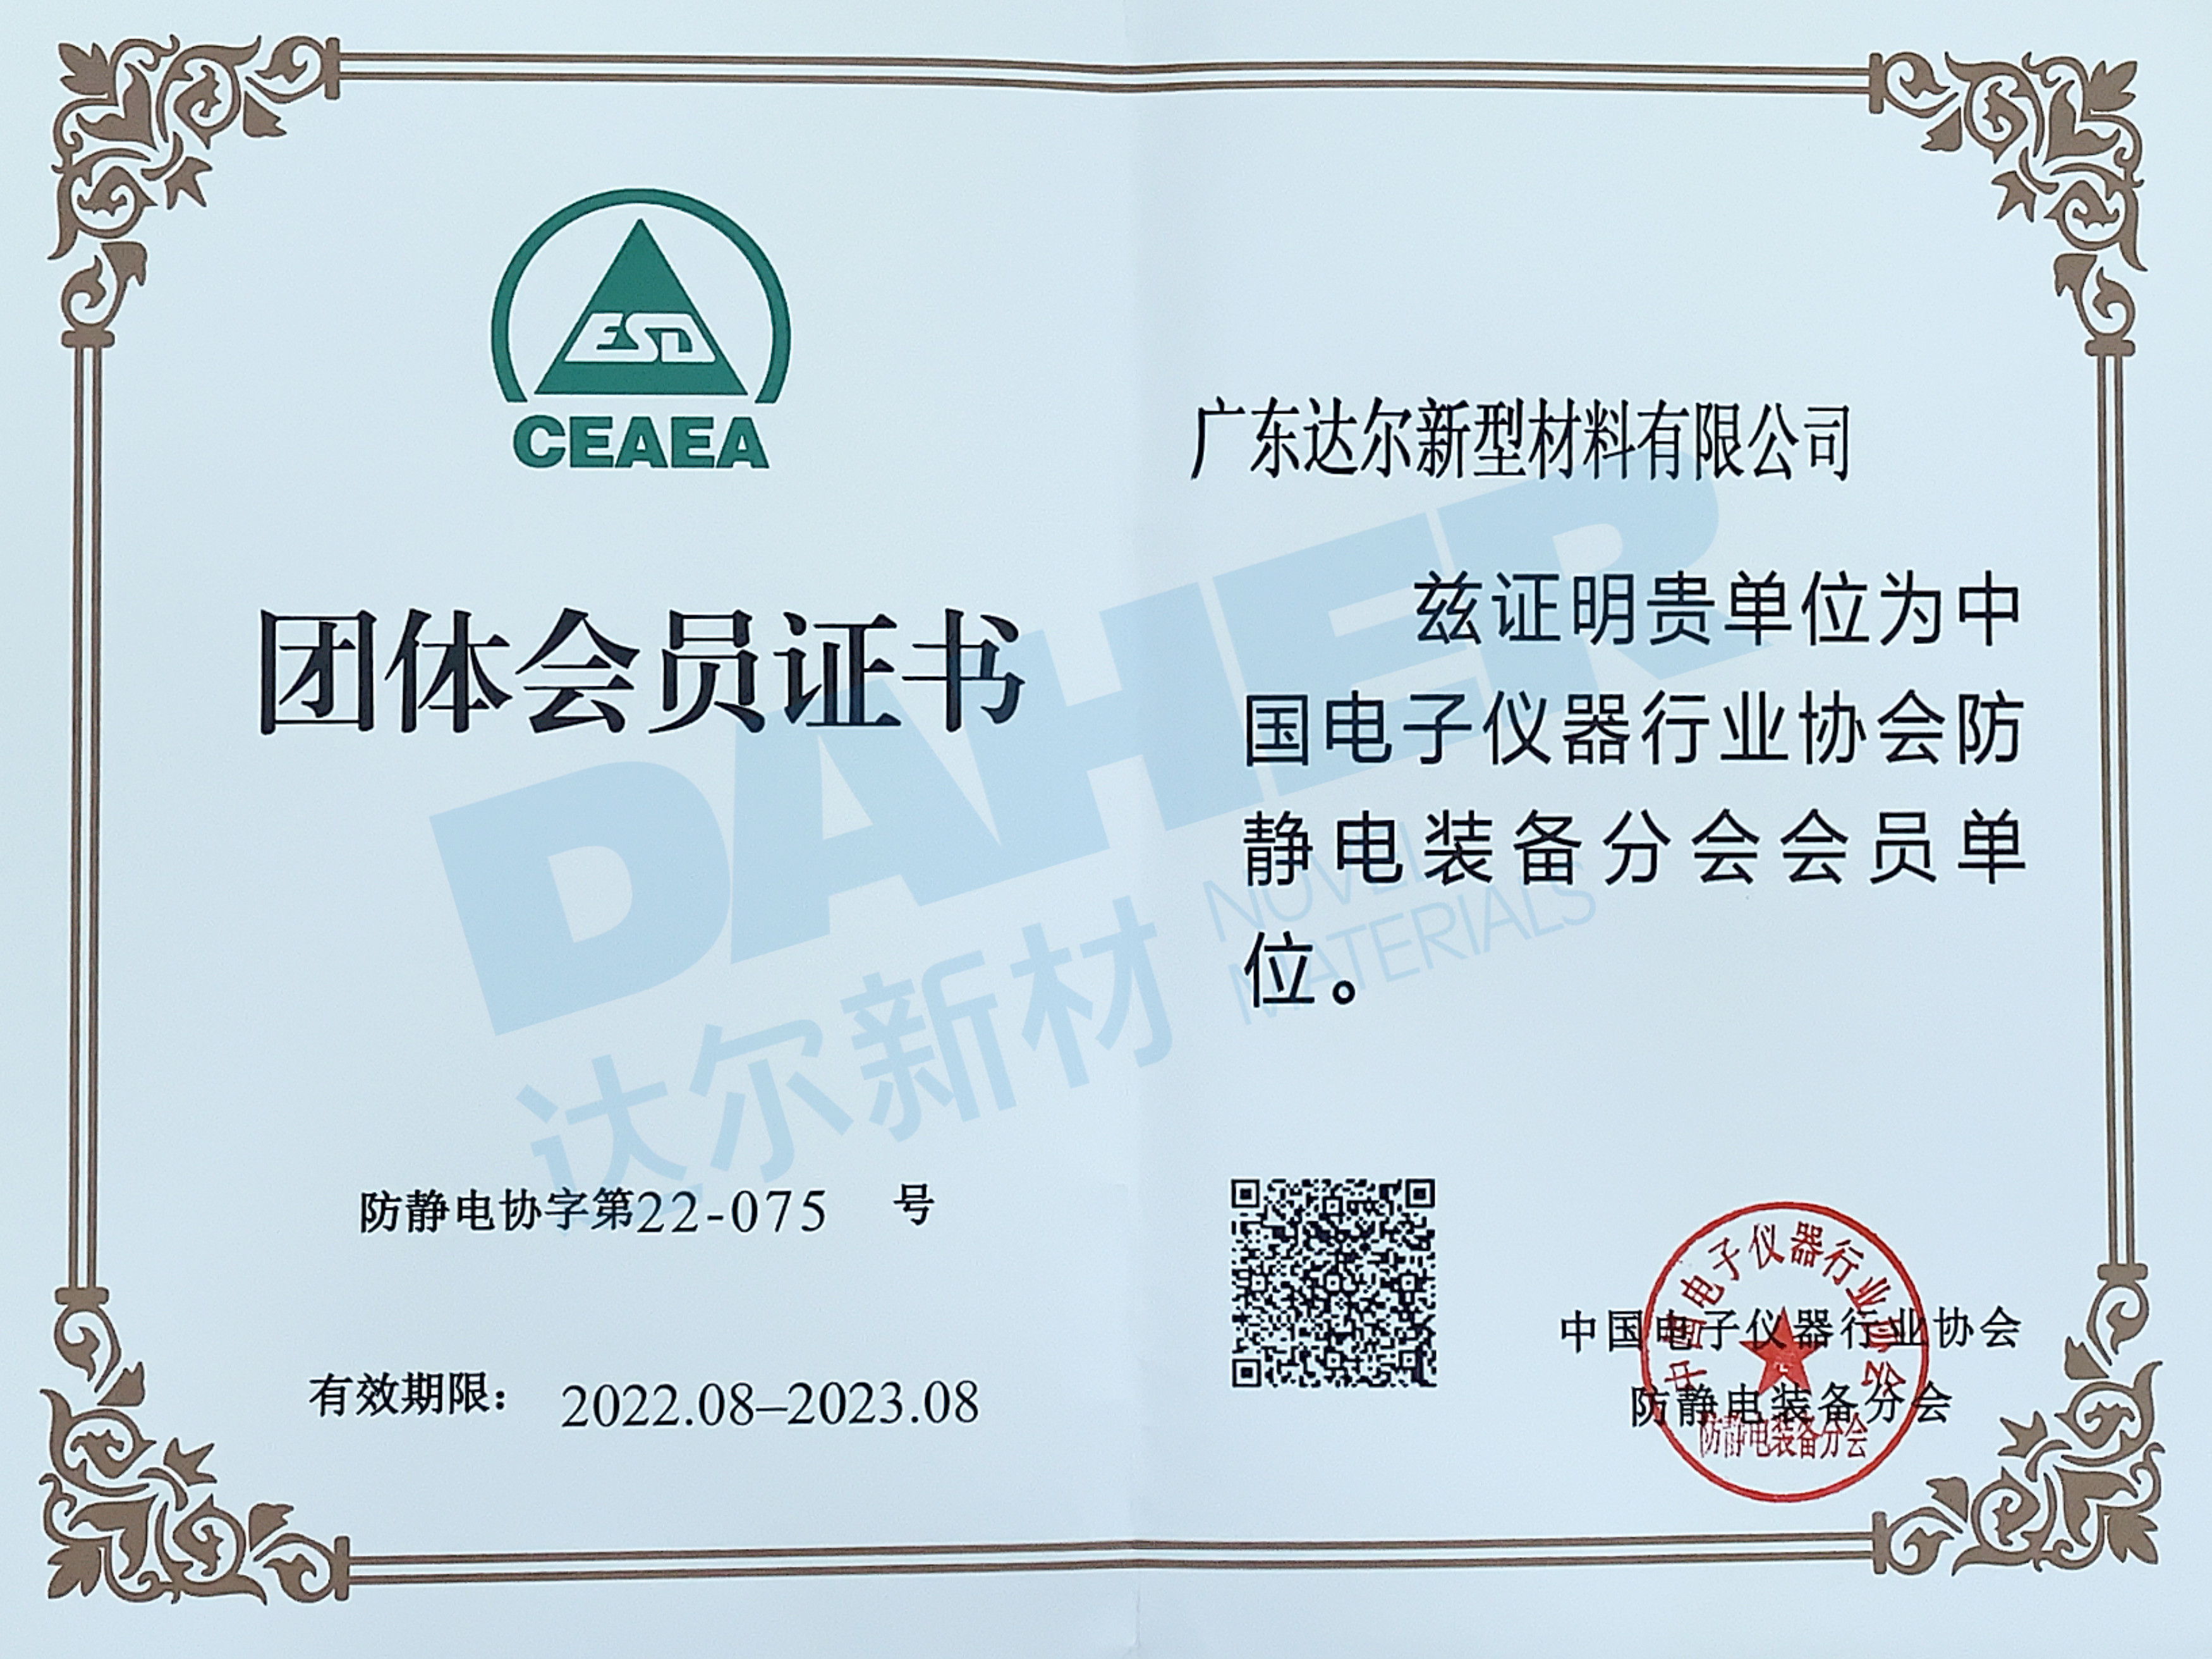 中国电子仪器行业协会防静电装备分会会员单位